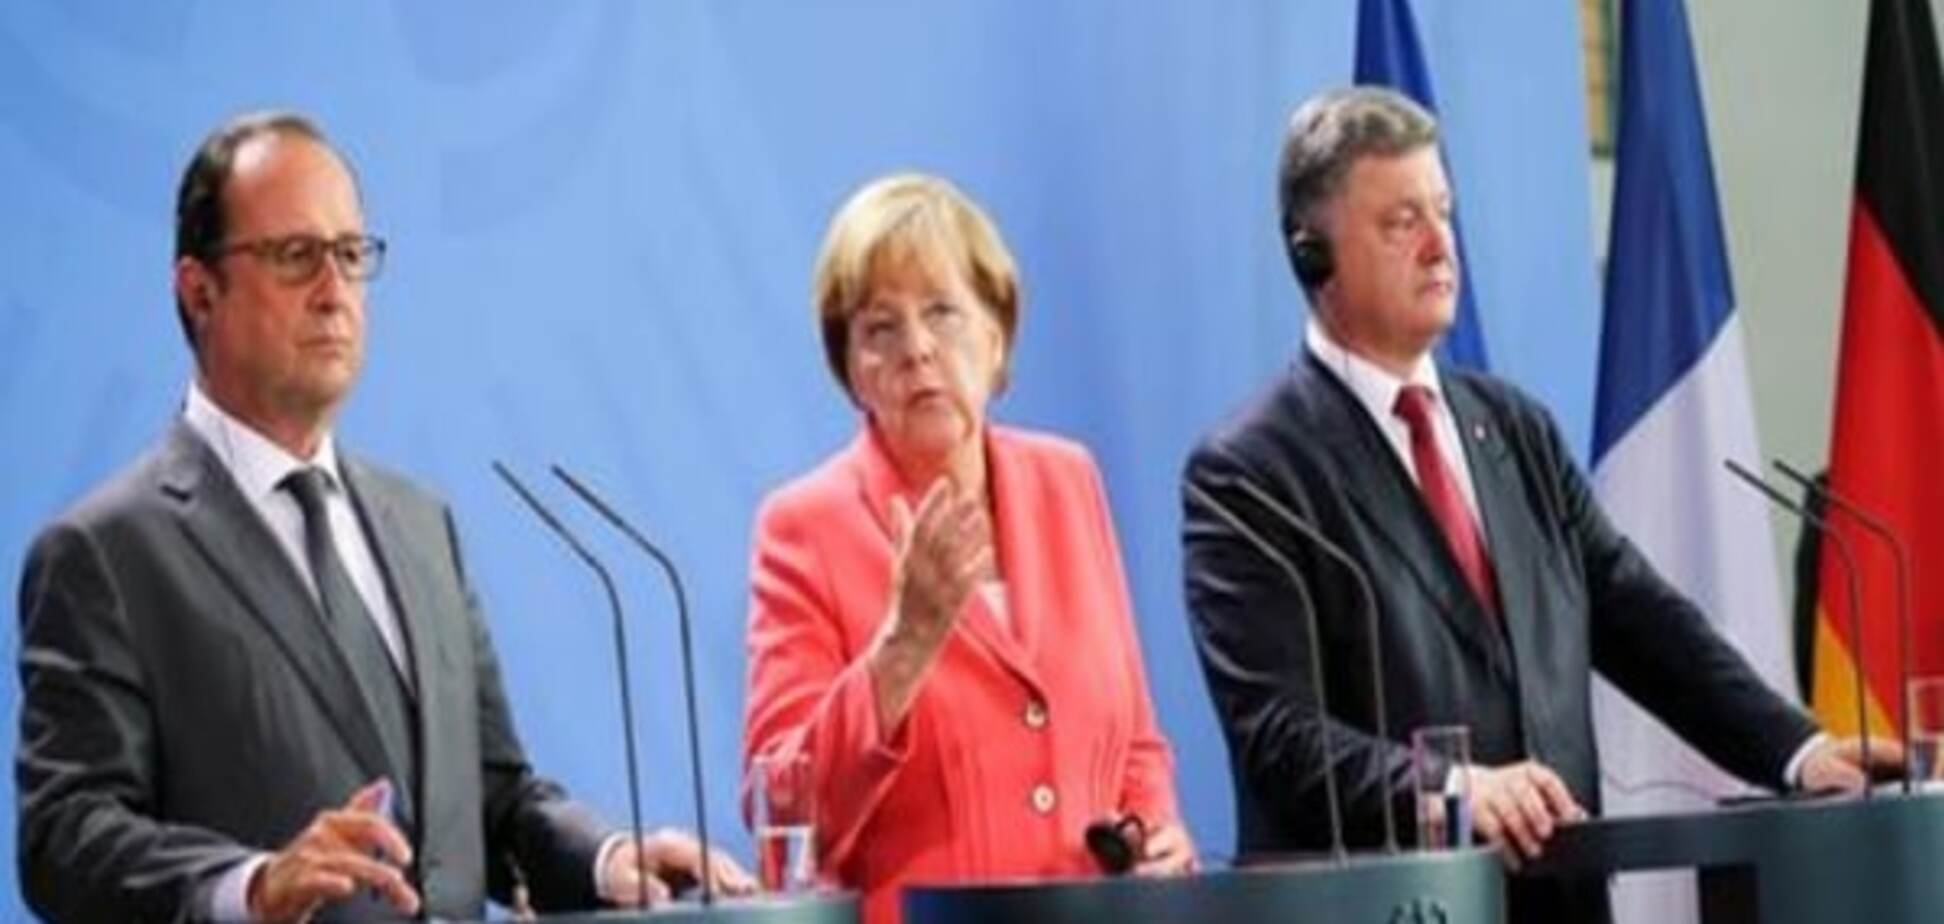 Комментарий: Трехсторонний саммит в Берлине и Путин в батискафе